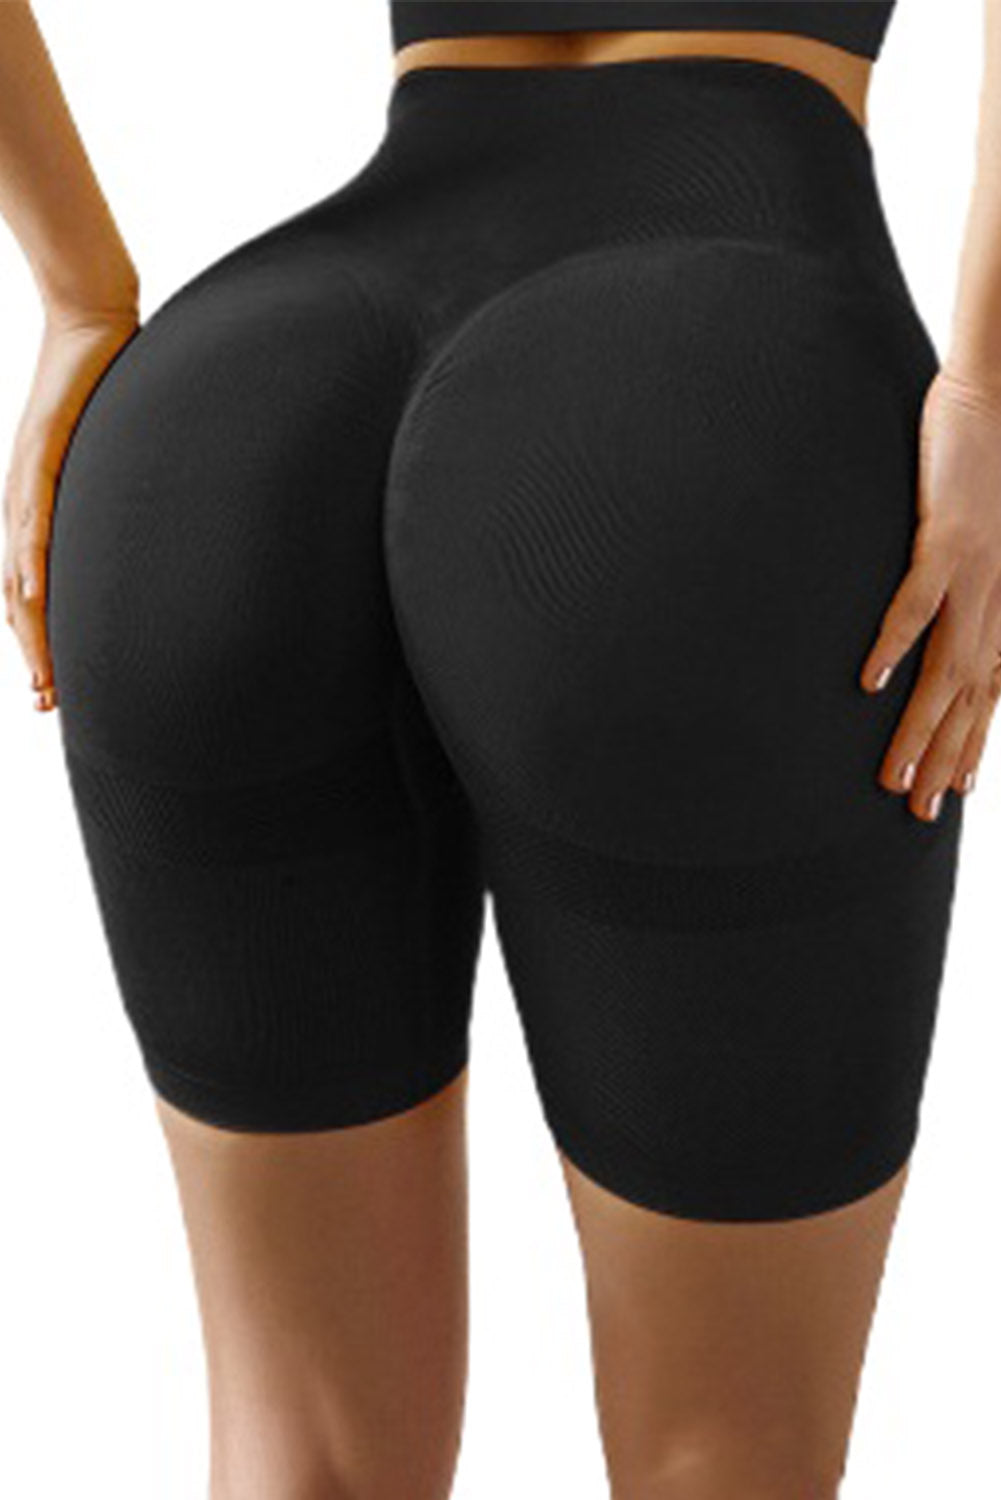 Black Slim Fit Hip Push Up High Waist Yoga Sport Shorts